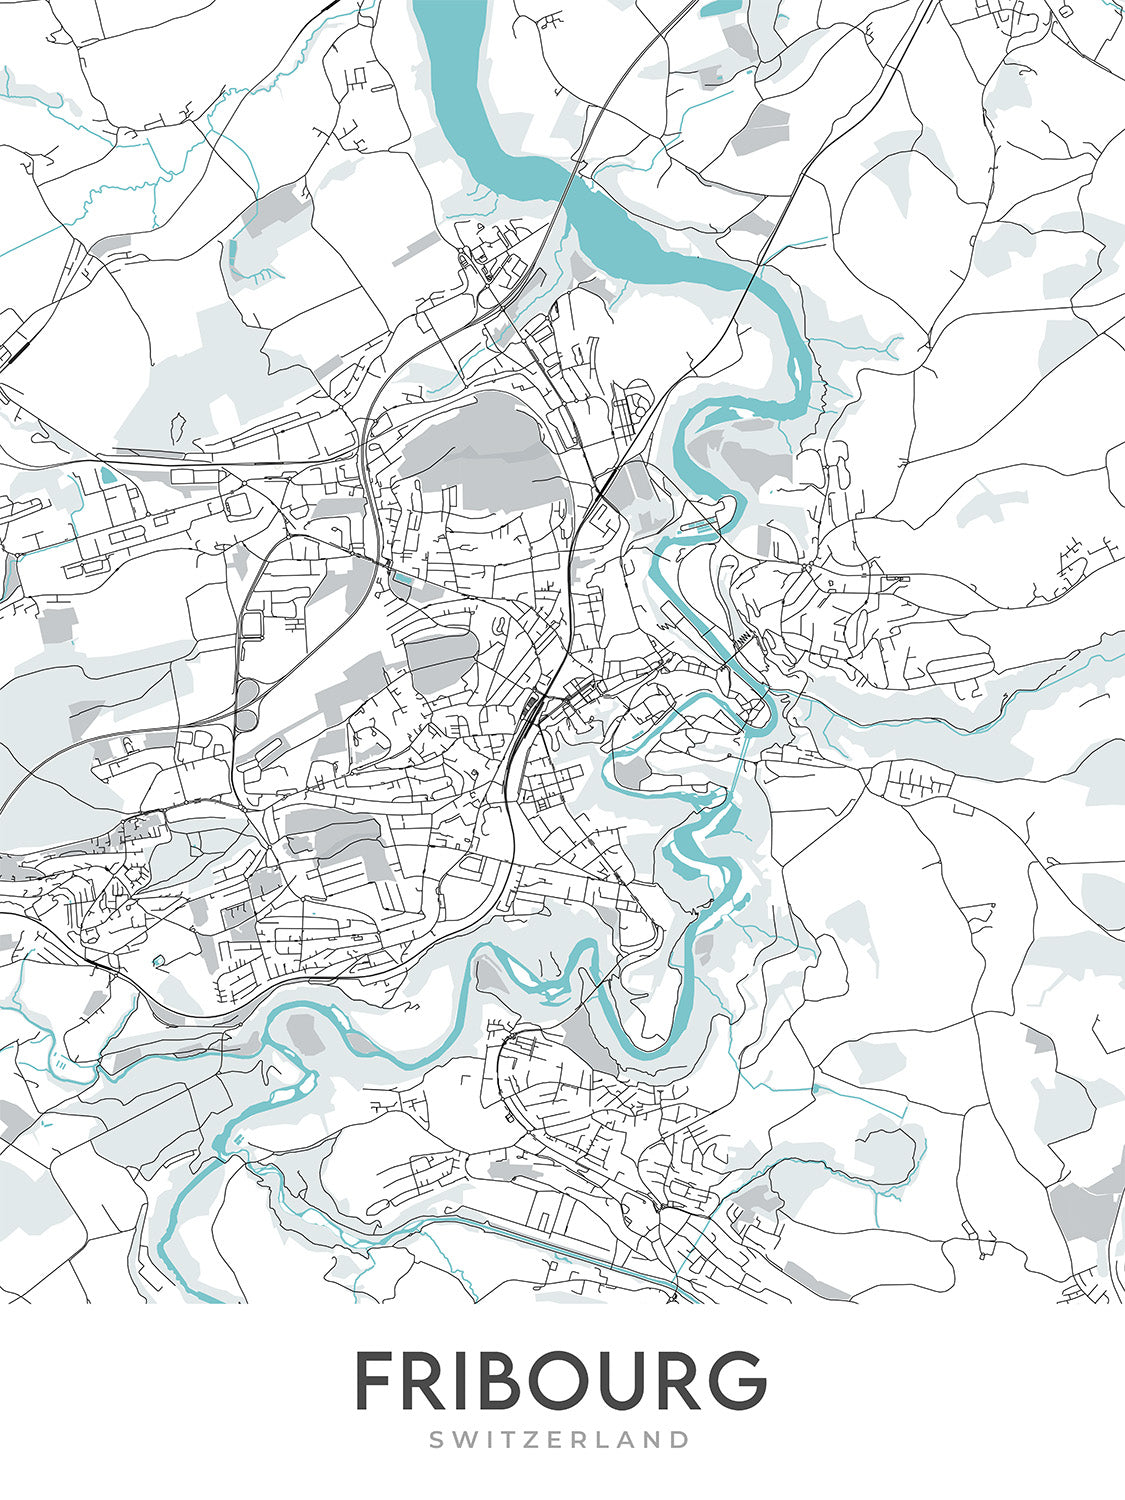 Plan de la ville moderne de Fribourg, Suisse : Altstadt, Cathédrale Saint-Pierre, Jet d'Eau, Palais des Nations, Parc des Eaux-Vives